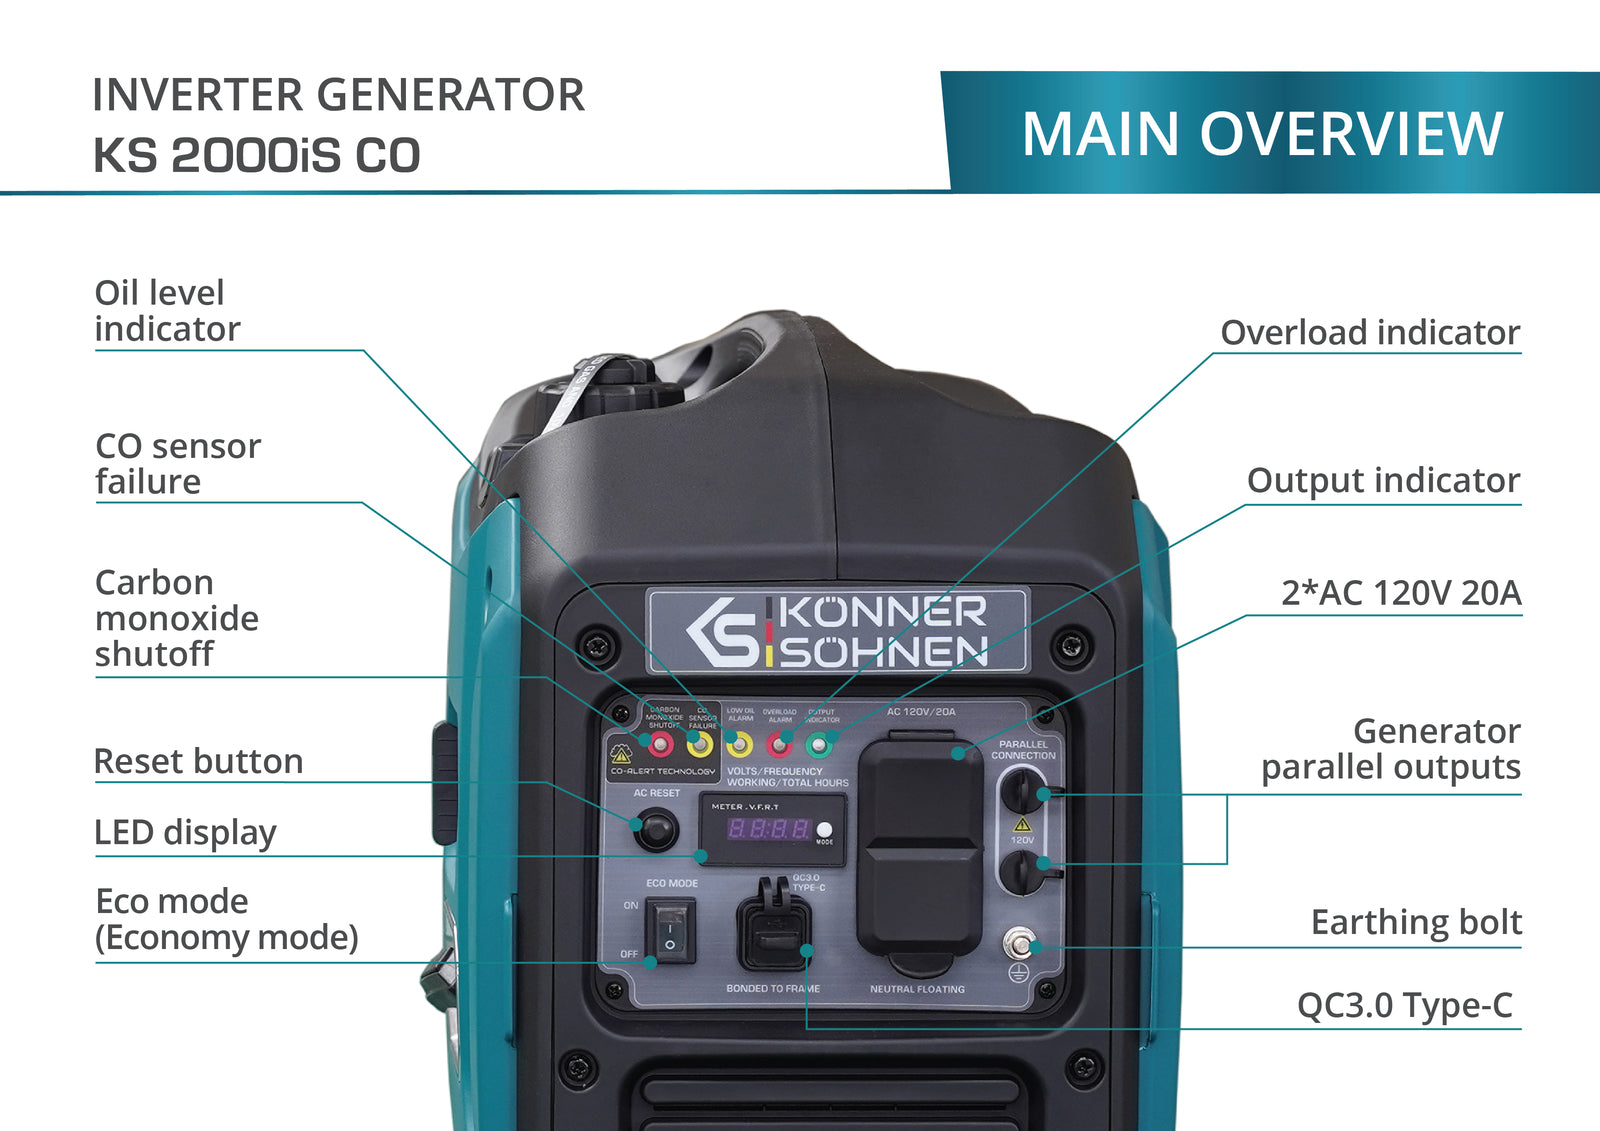 Generador inverter KS 2000iS CO